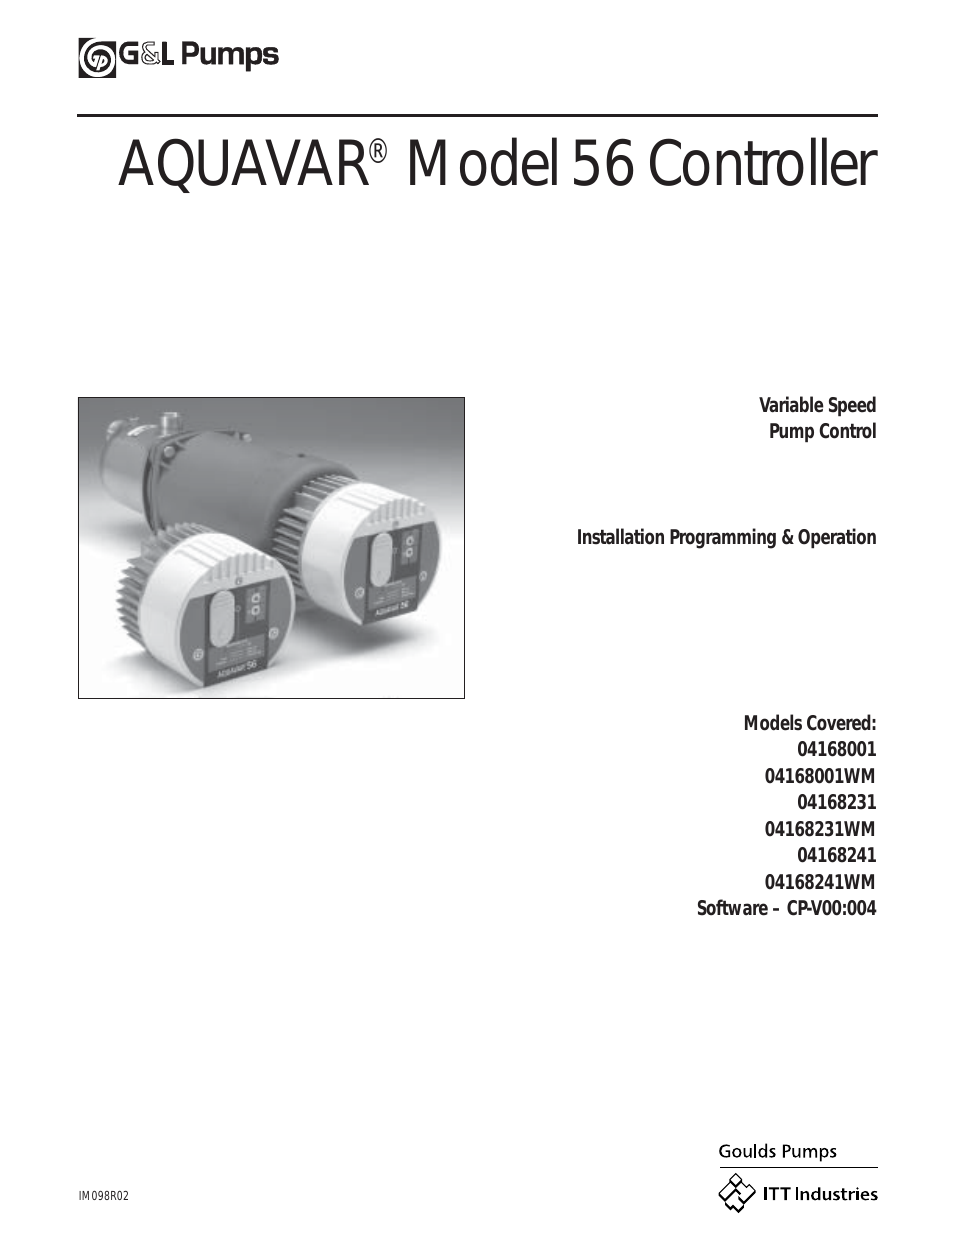 IM098 AQUAVAR Model 56 Controller